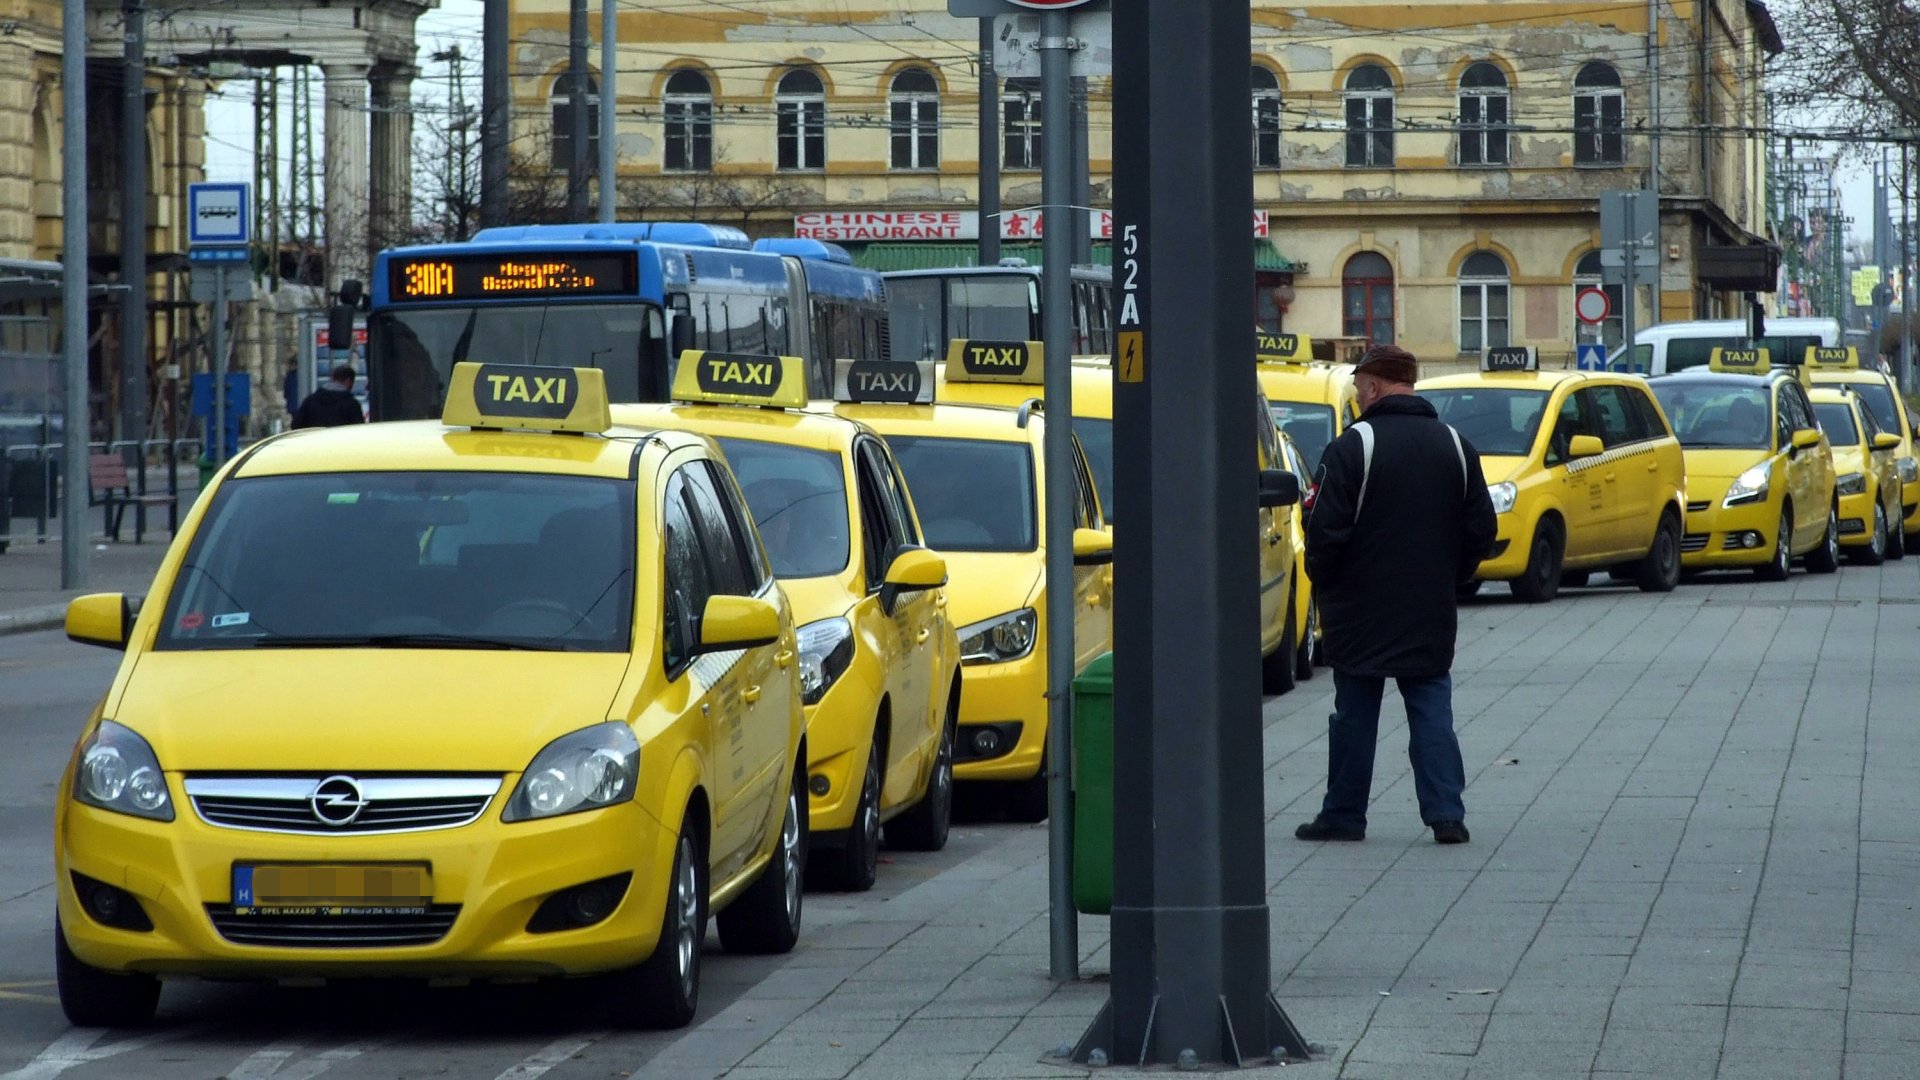 Taxi gépkocsik sora vár utasra a Keleti pályaudvar érkezési oldalánál 2018 januárjában